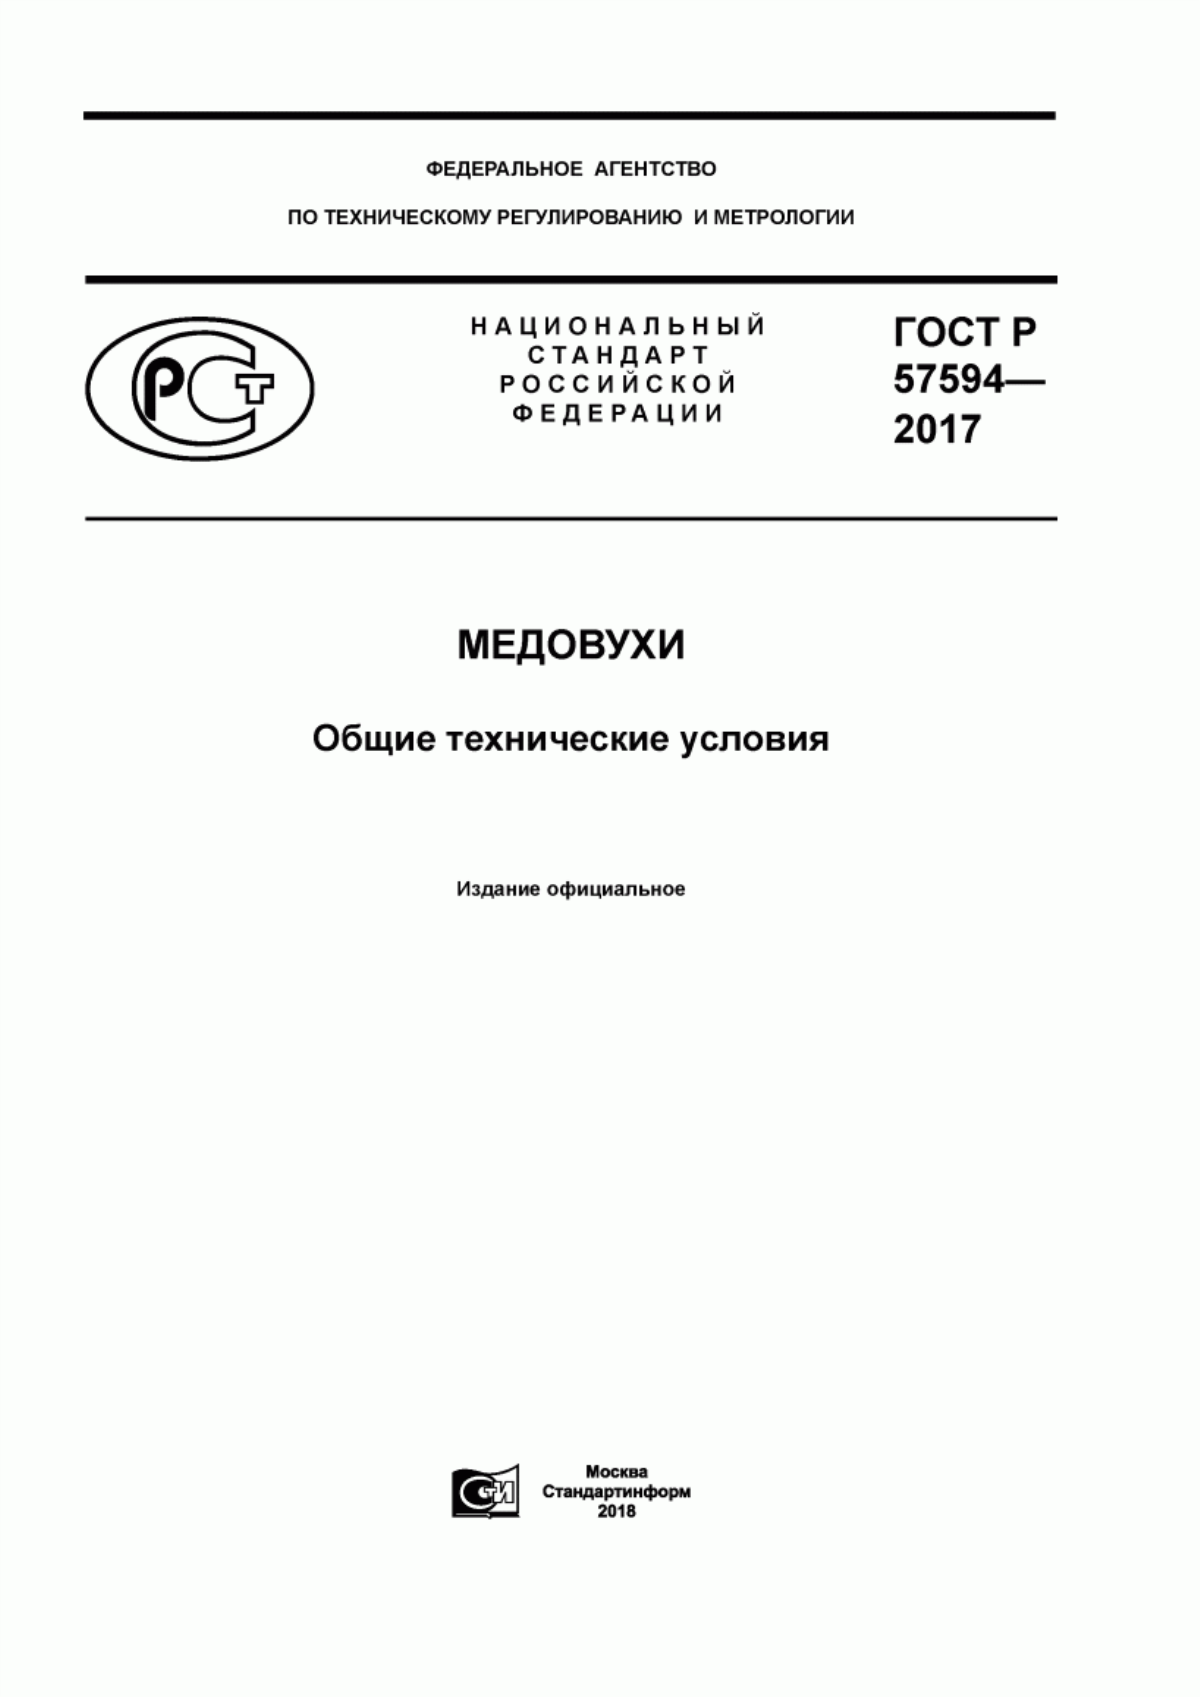 ГОСТ Р 57594-2017 Медовухи. Общие технические условия